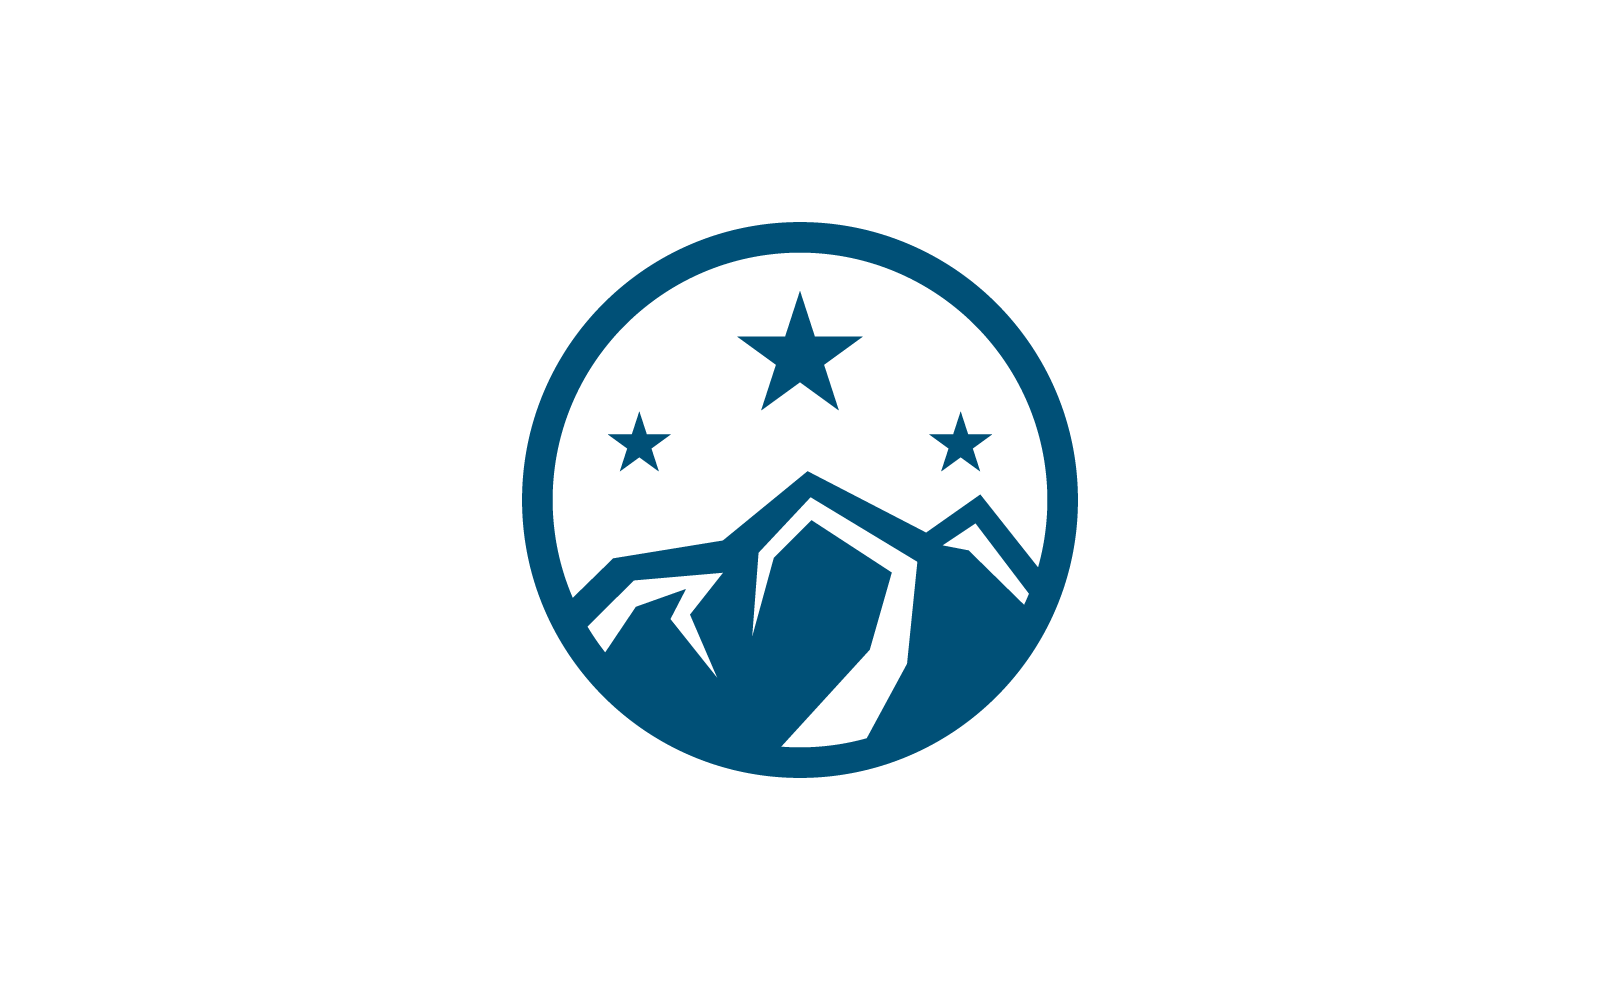 Modello di illustrazione vettoriale del logo dal design piatto di montagna